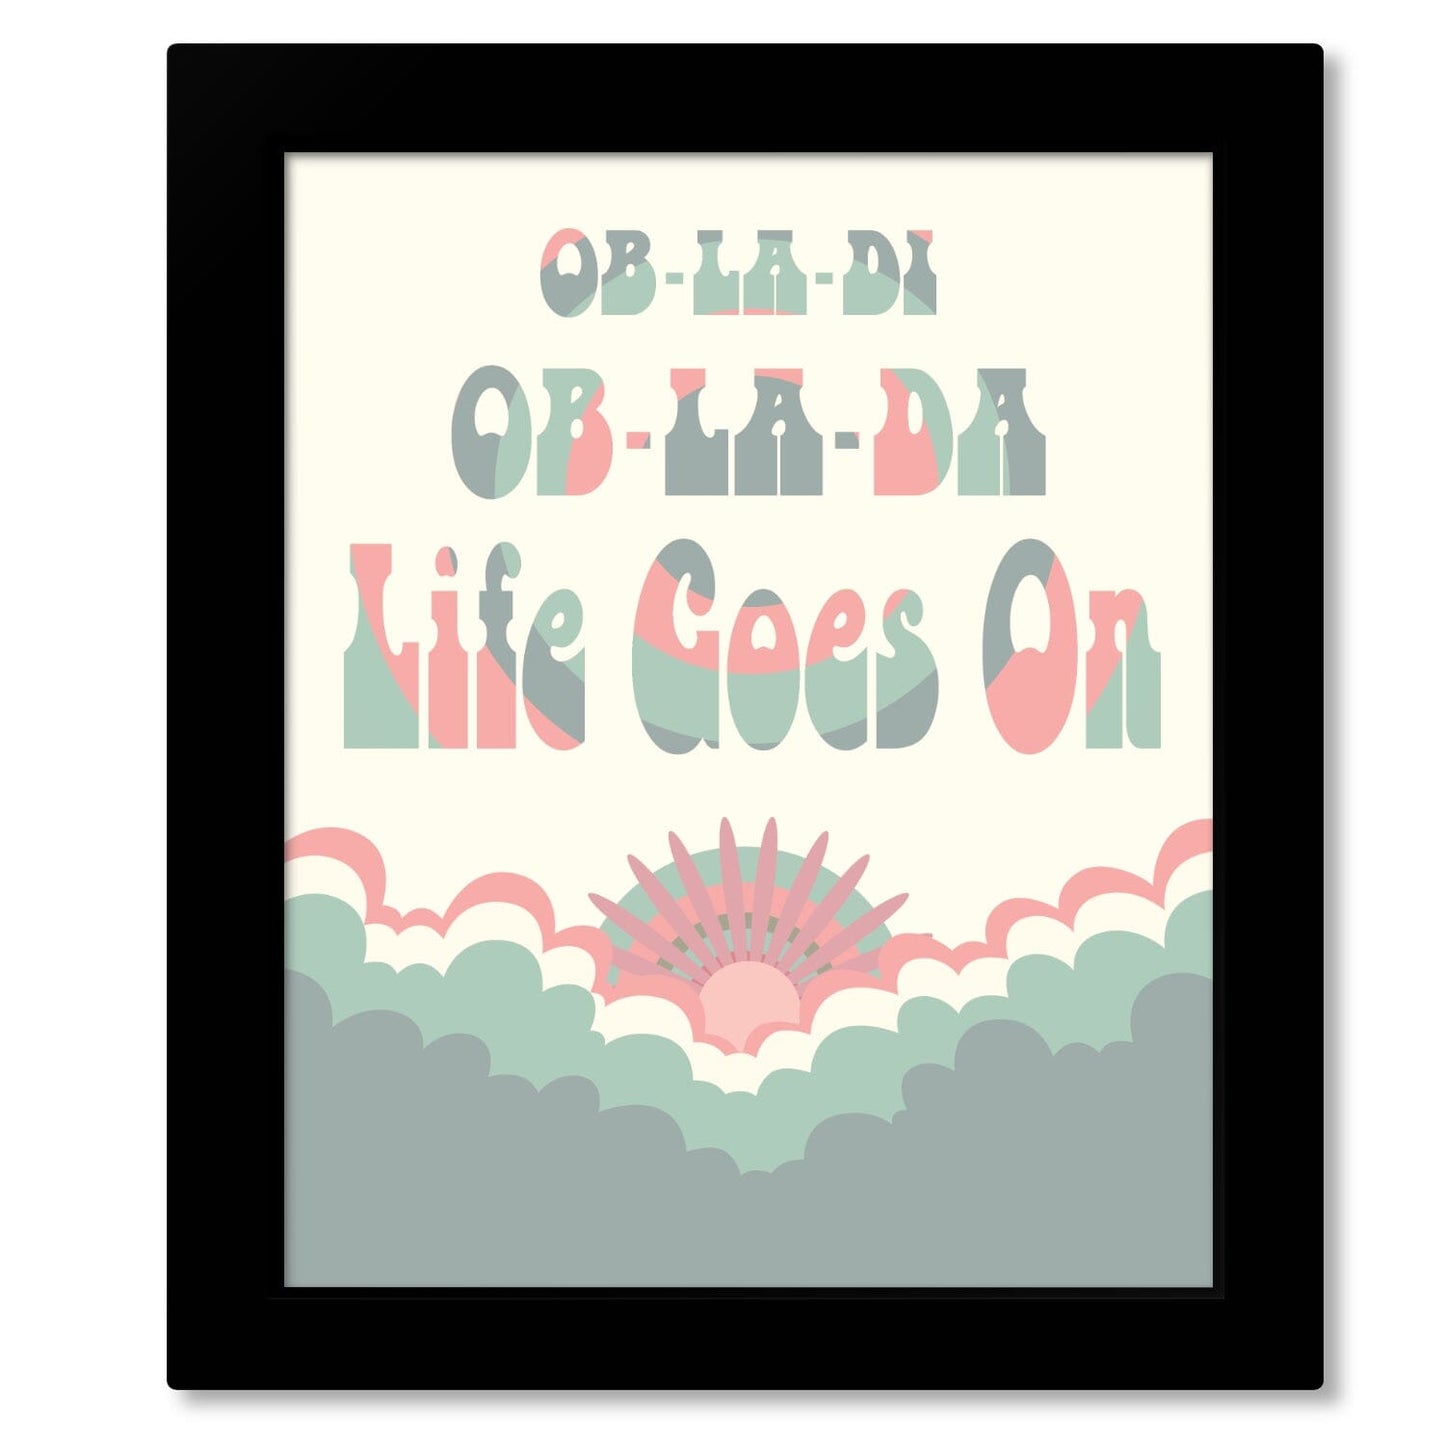 Ob-La-Di Ob-La-Da by the Beatles - Song Lyrics Music Print Song Lyrics Art Song Lyrics Art 16x20 Framed Print (without mat) 